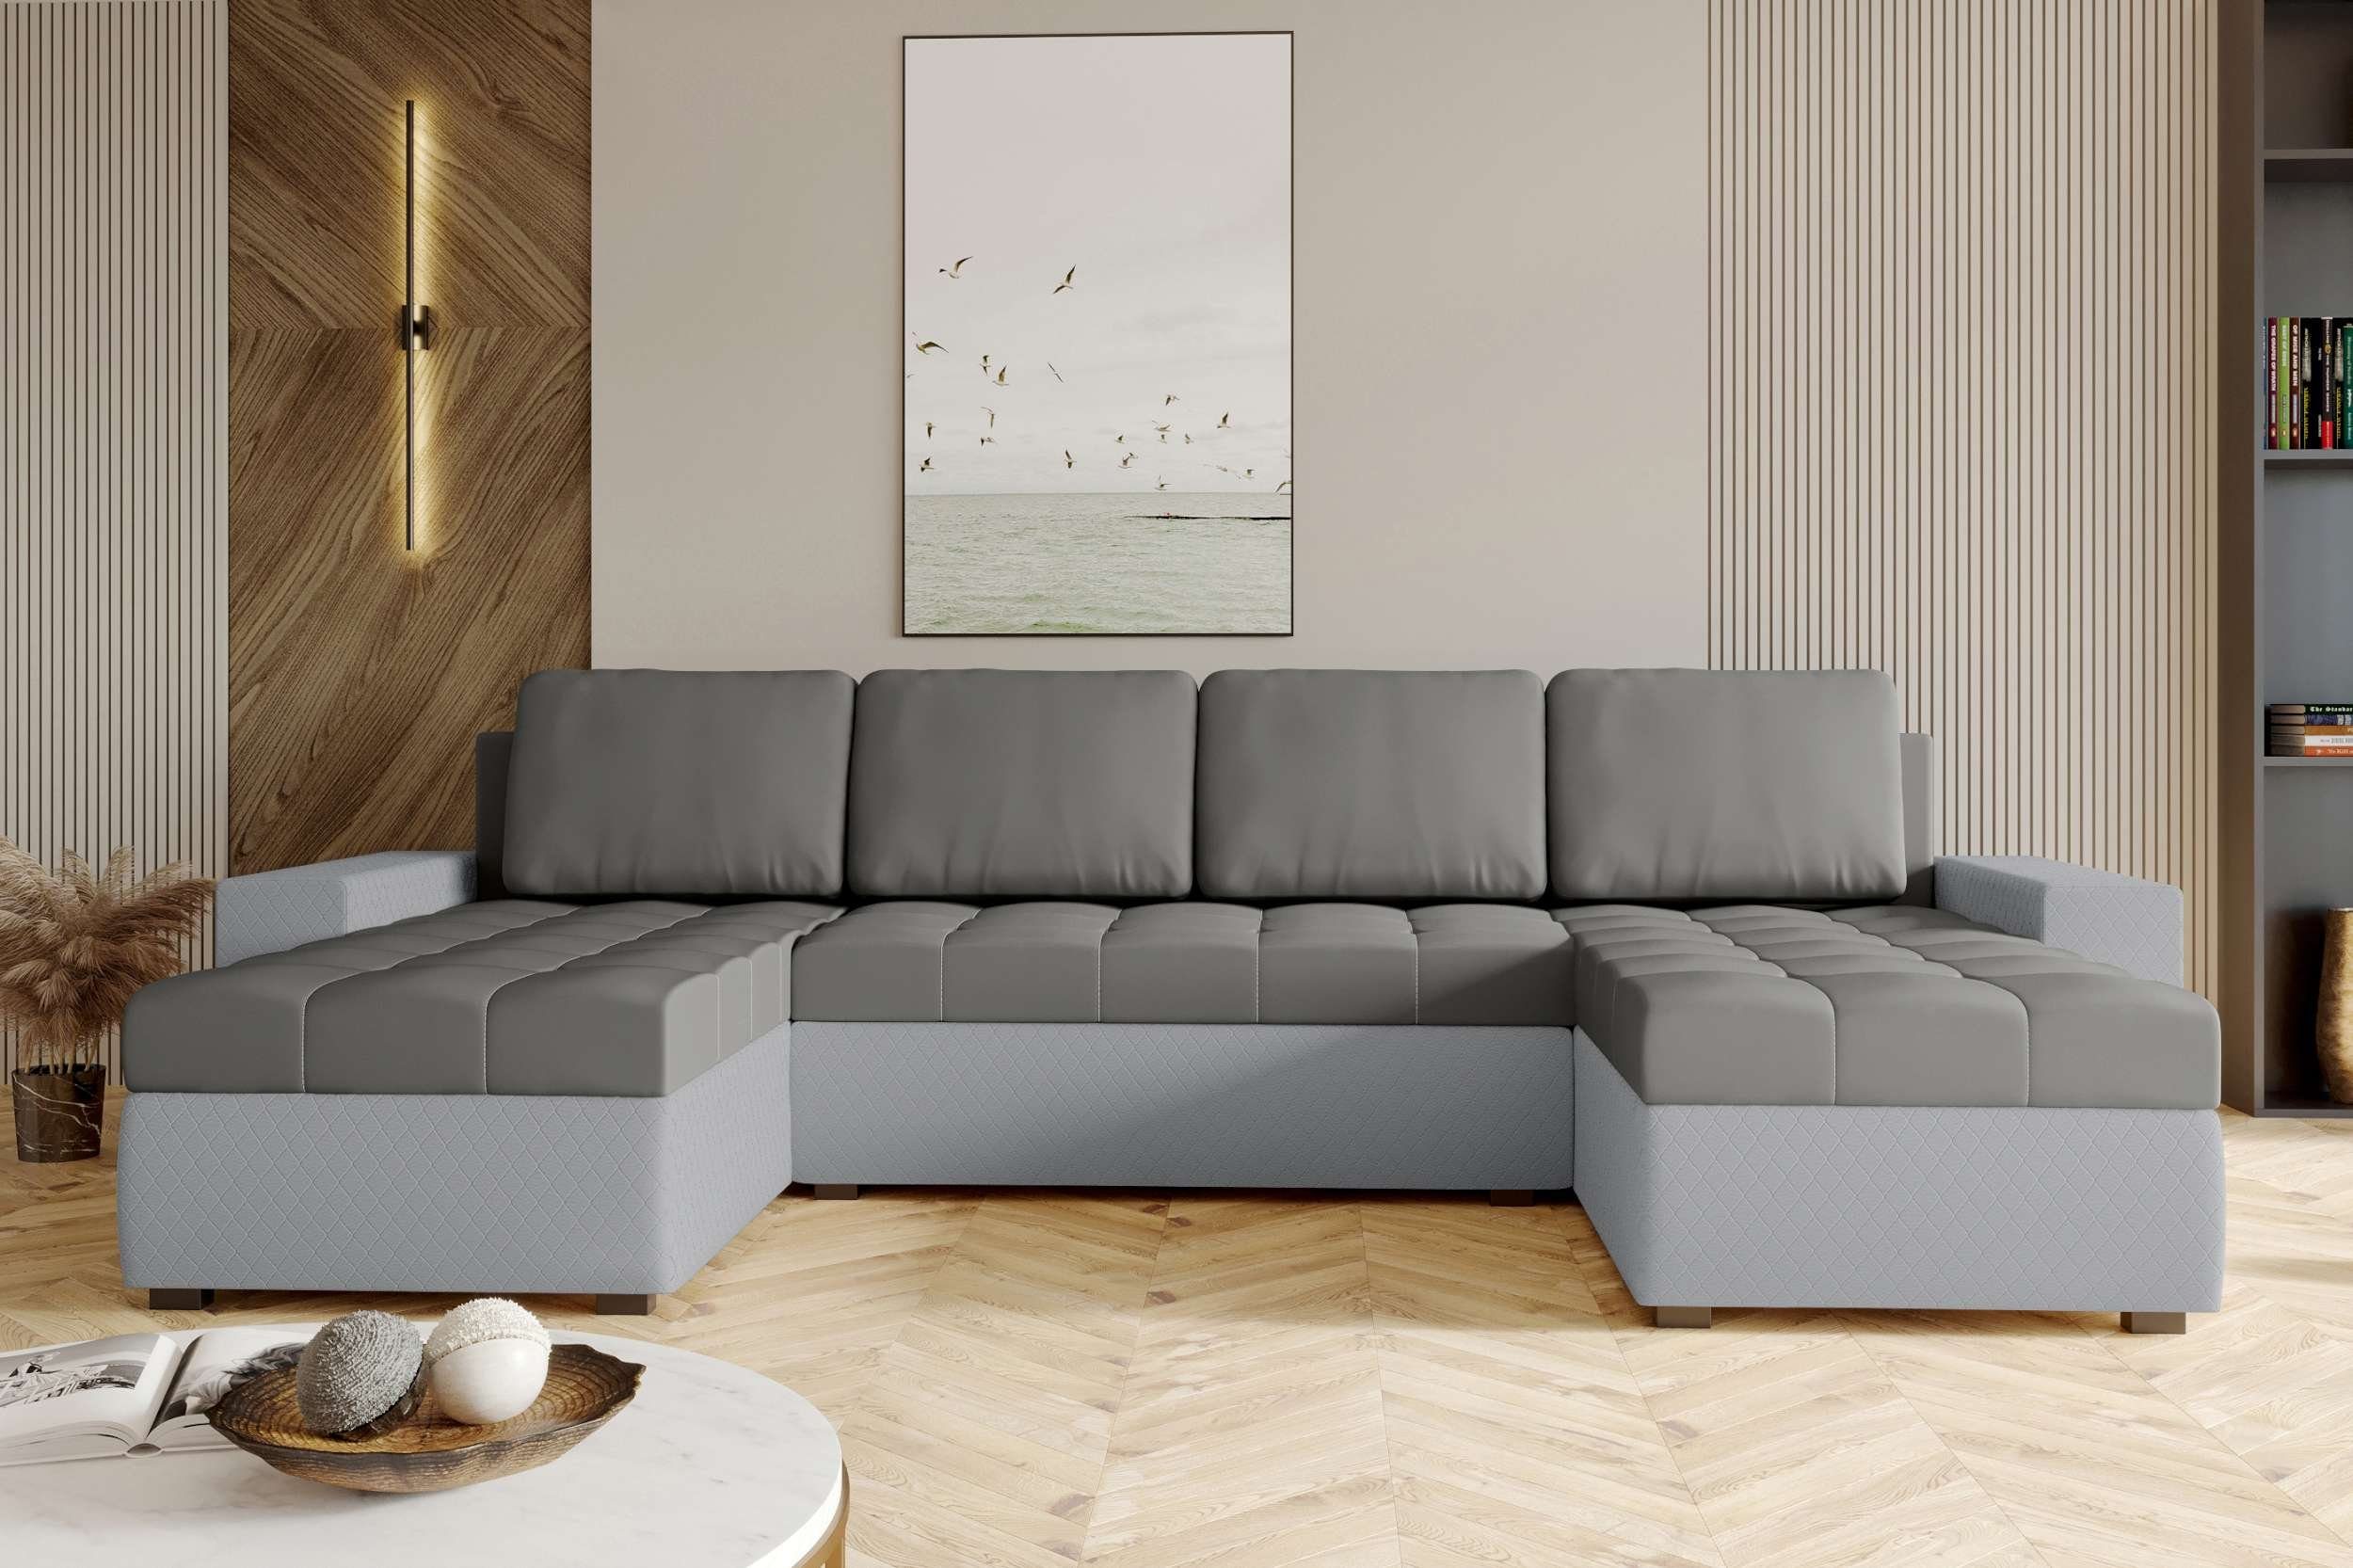 Bettfunktion, Sofa, mit Bettkasten, Sitzkomfort, Amelia, Stylefy Design mit U-Form, Wohnlandschaft Modern Eckcouch,